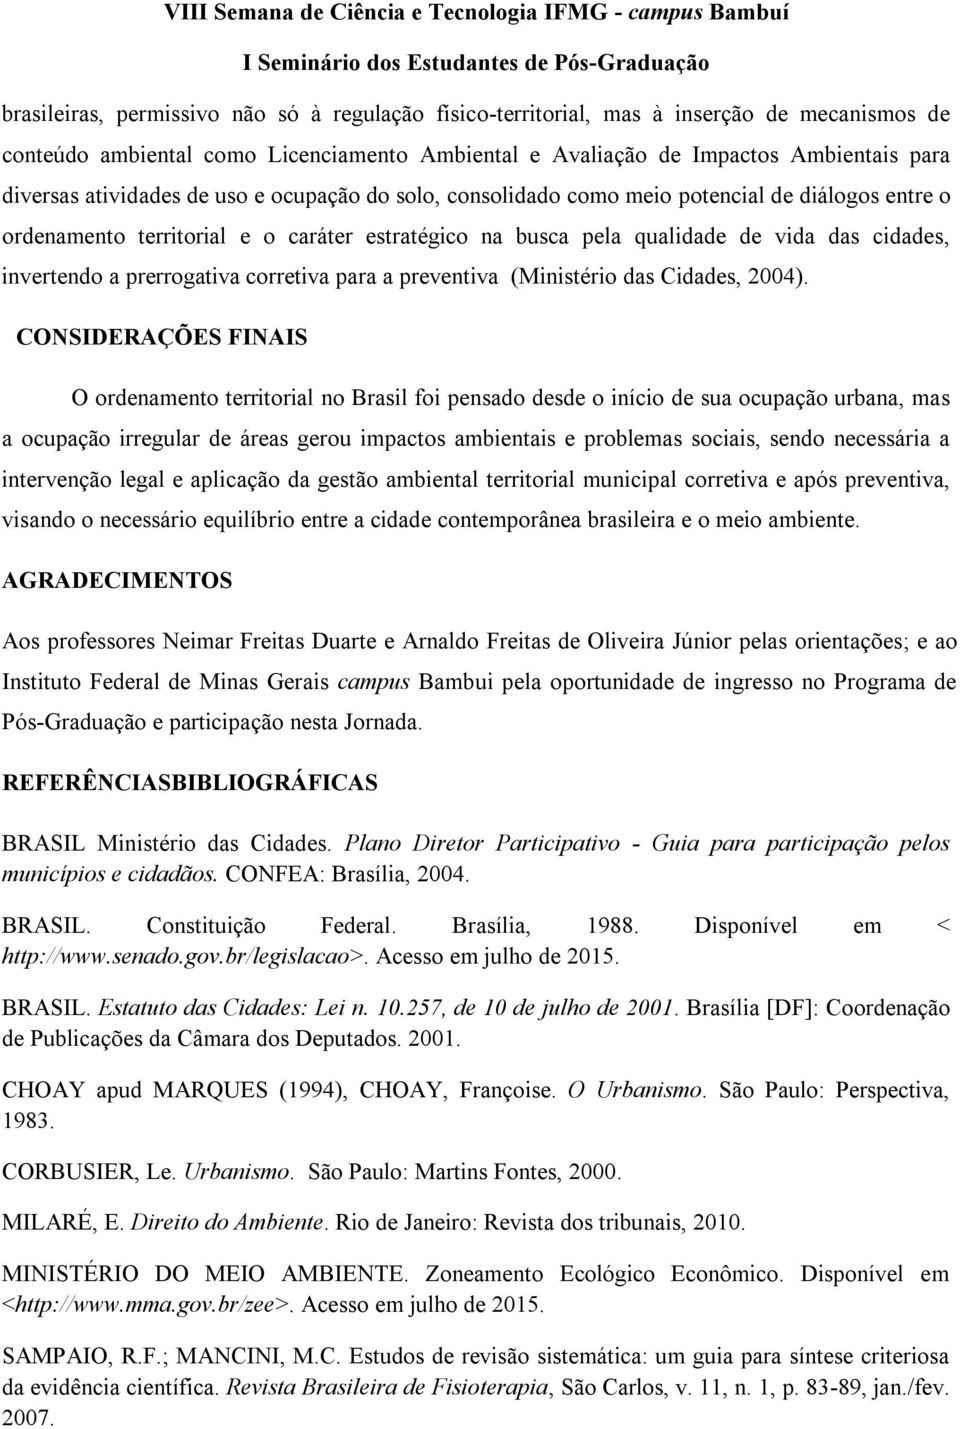 prerrogativa corretiva para a preventiva (Ministério das Cidades, 2004).